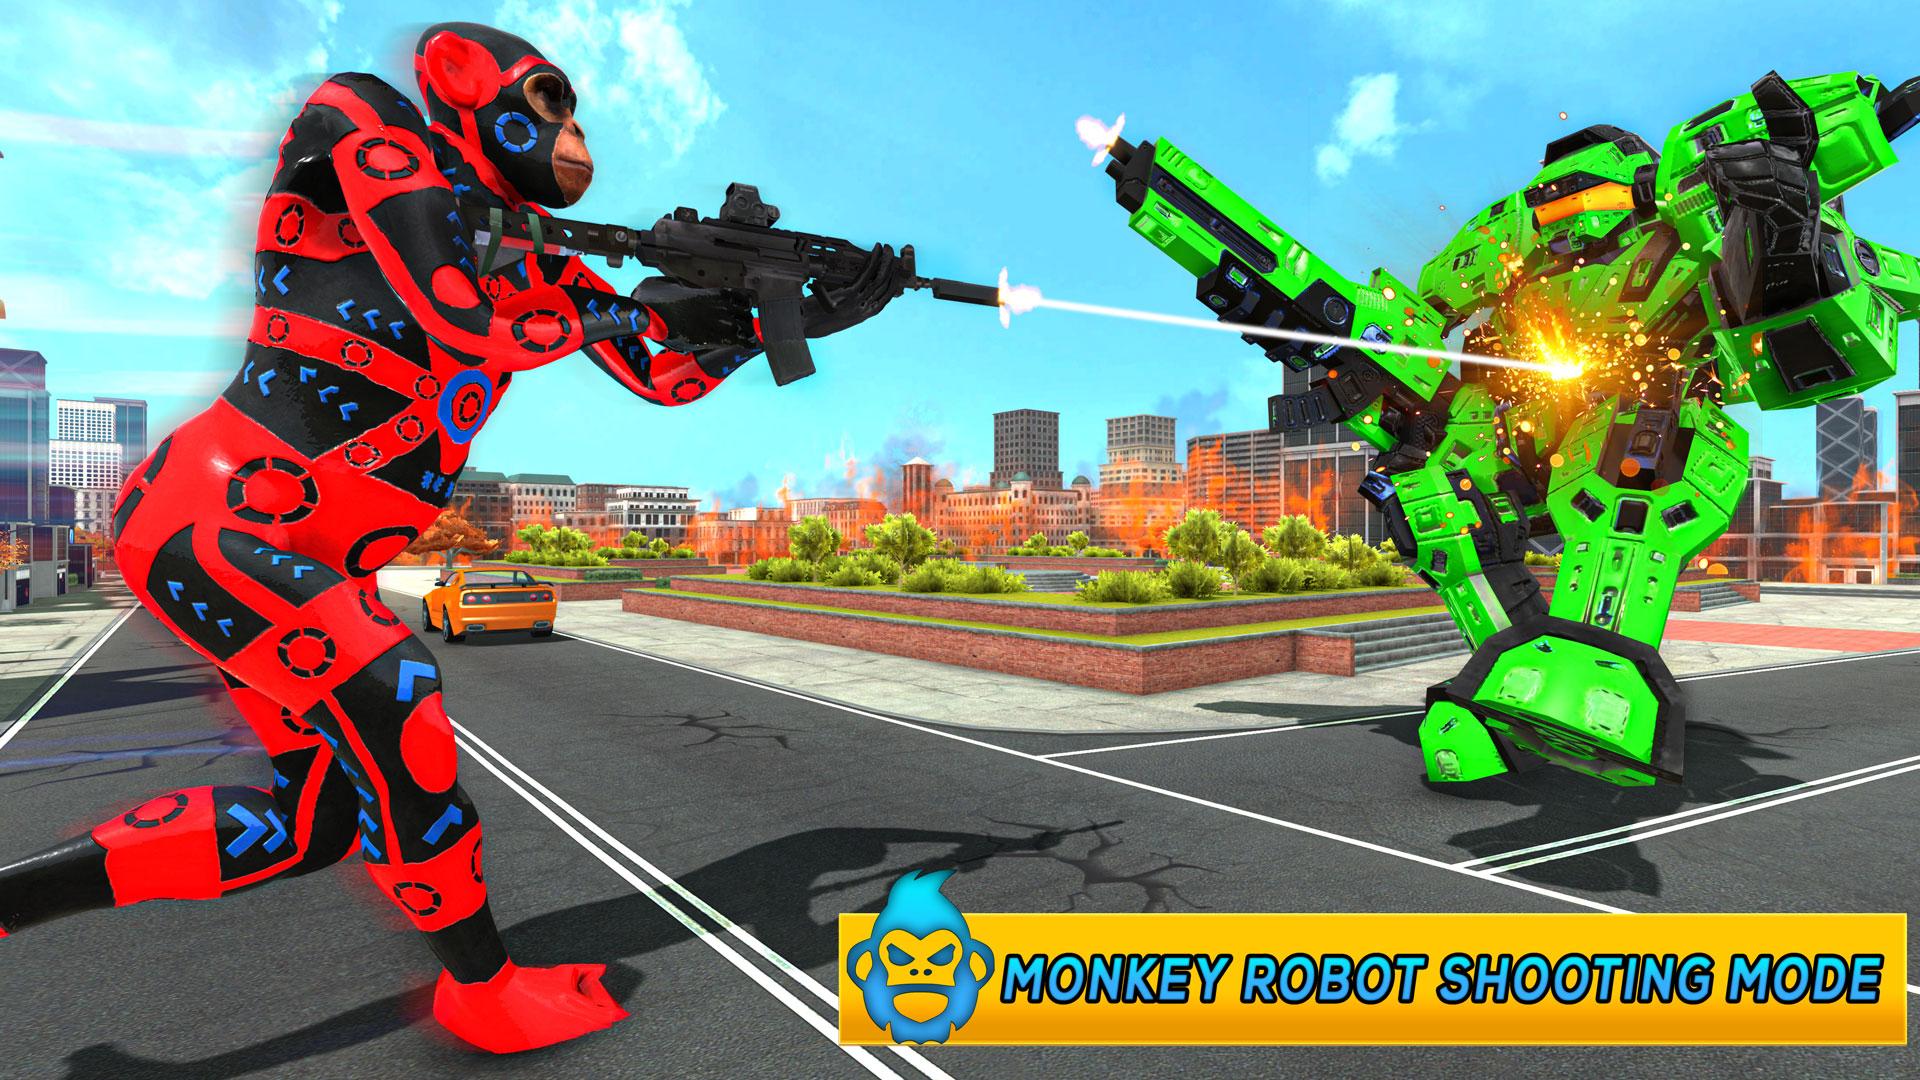 Monkey Car Robot Transformation Game 1.0 Screenshot 7